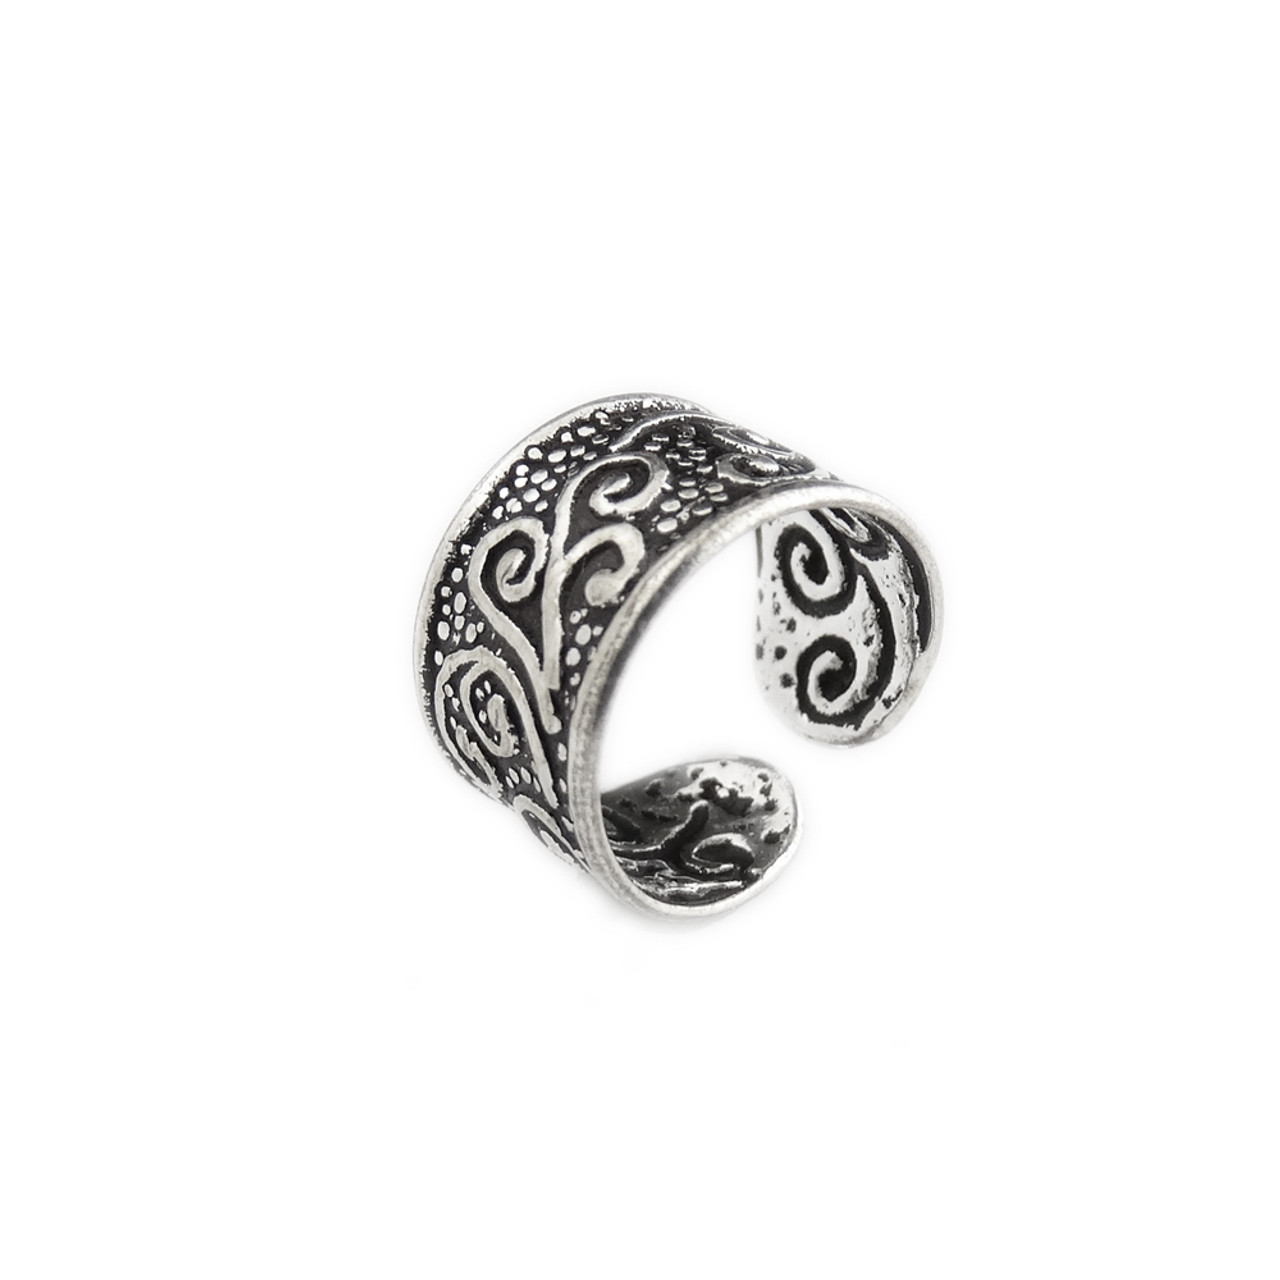 Spiral Filigree Ear Cuff Earring - Sterling Silver